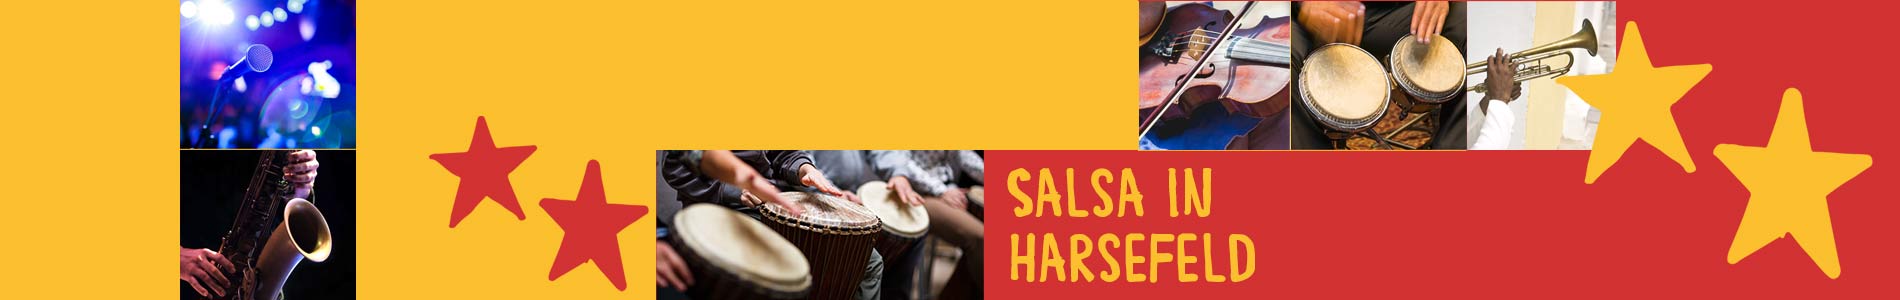 Salsa in Harsefeld – Salsa lernen und tanzen, Tanzkurse, Partys, Veranstaltungen